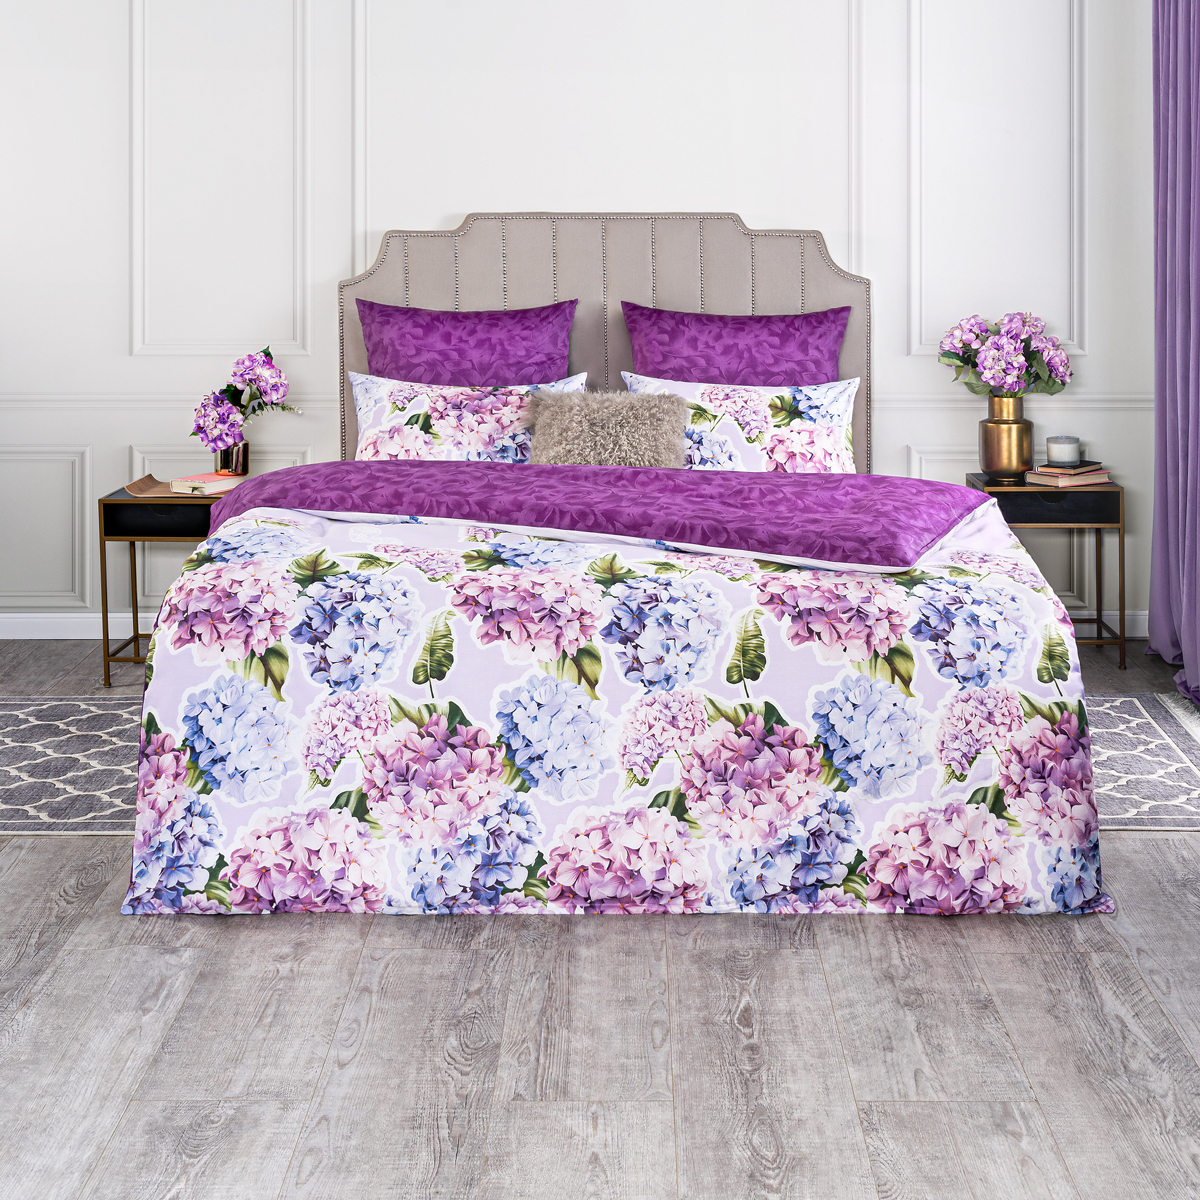 Комплект постельного белья Estia Флёр белый с фиолетовым Двуспальный евро кпб истинная красота фиолетовый р евро